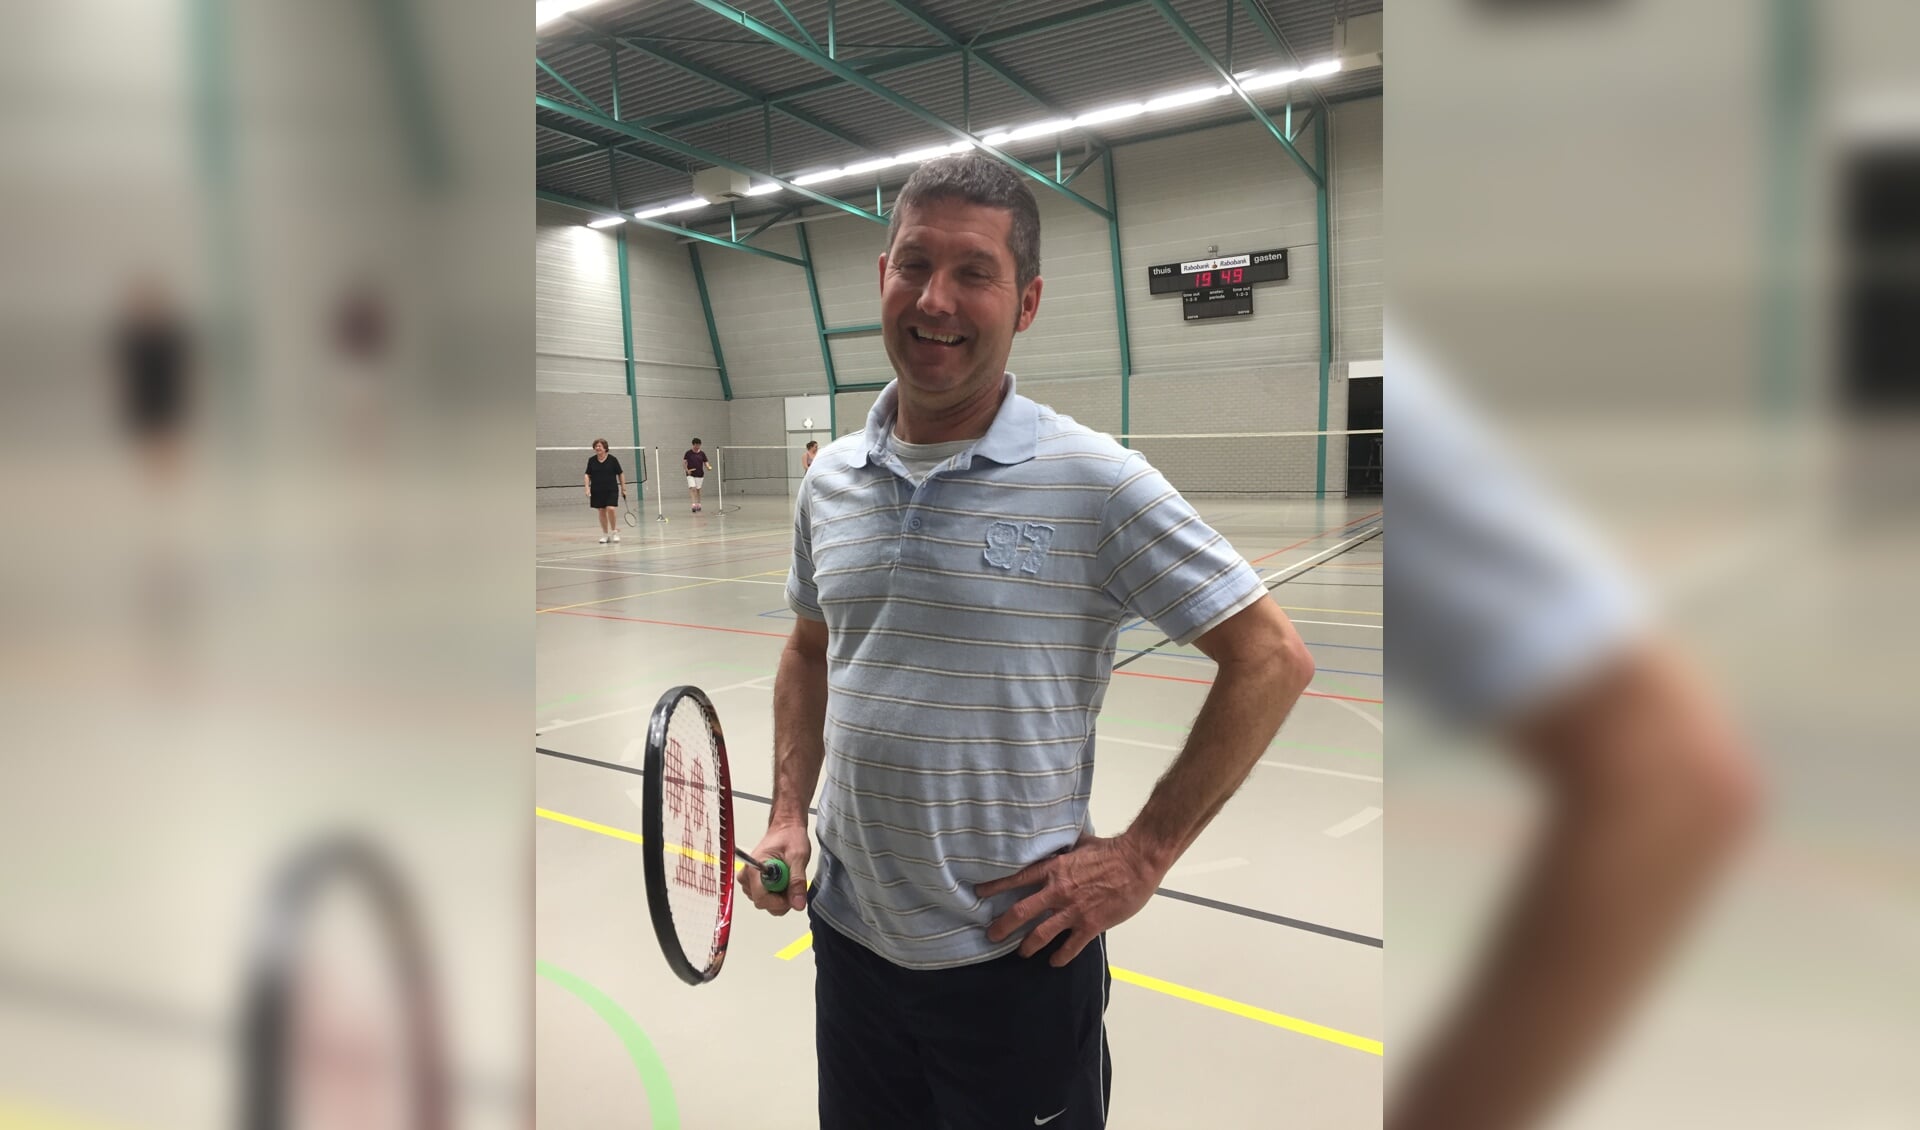 Bert Schepers is een van de fanatieke badmintonners bij Badminton Club Lieshout